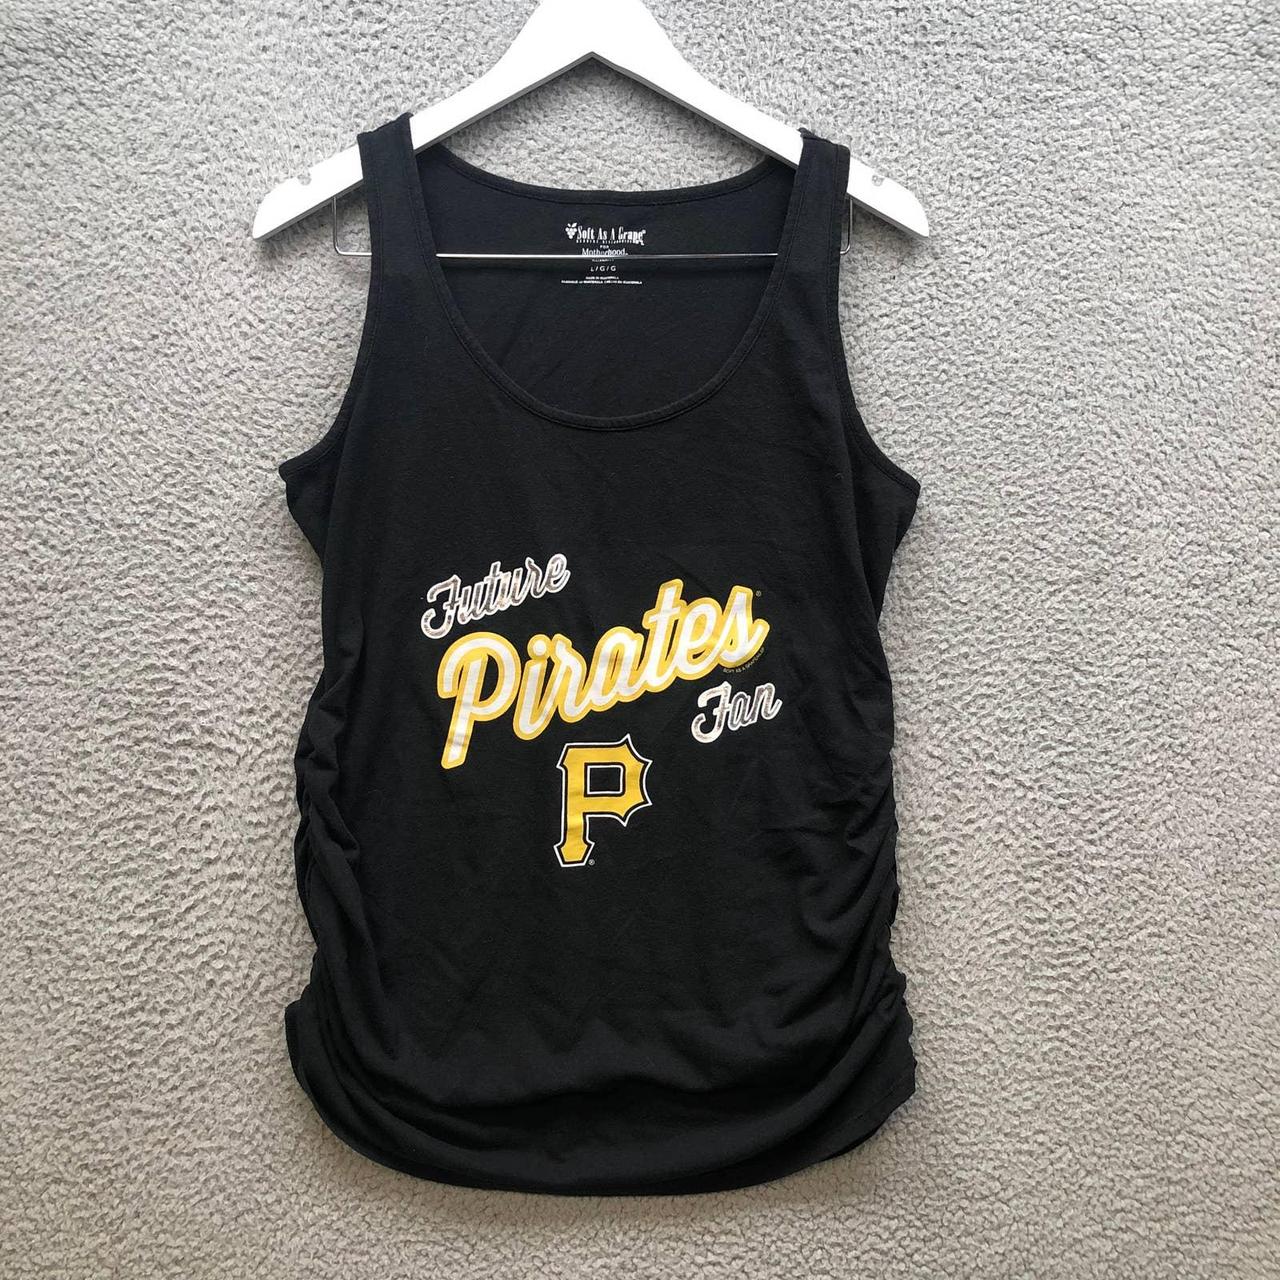 Pittsburgh Pirates Tank Top Shirt Women's Size Large - Depop